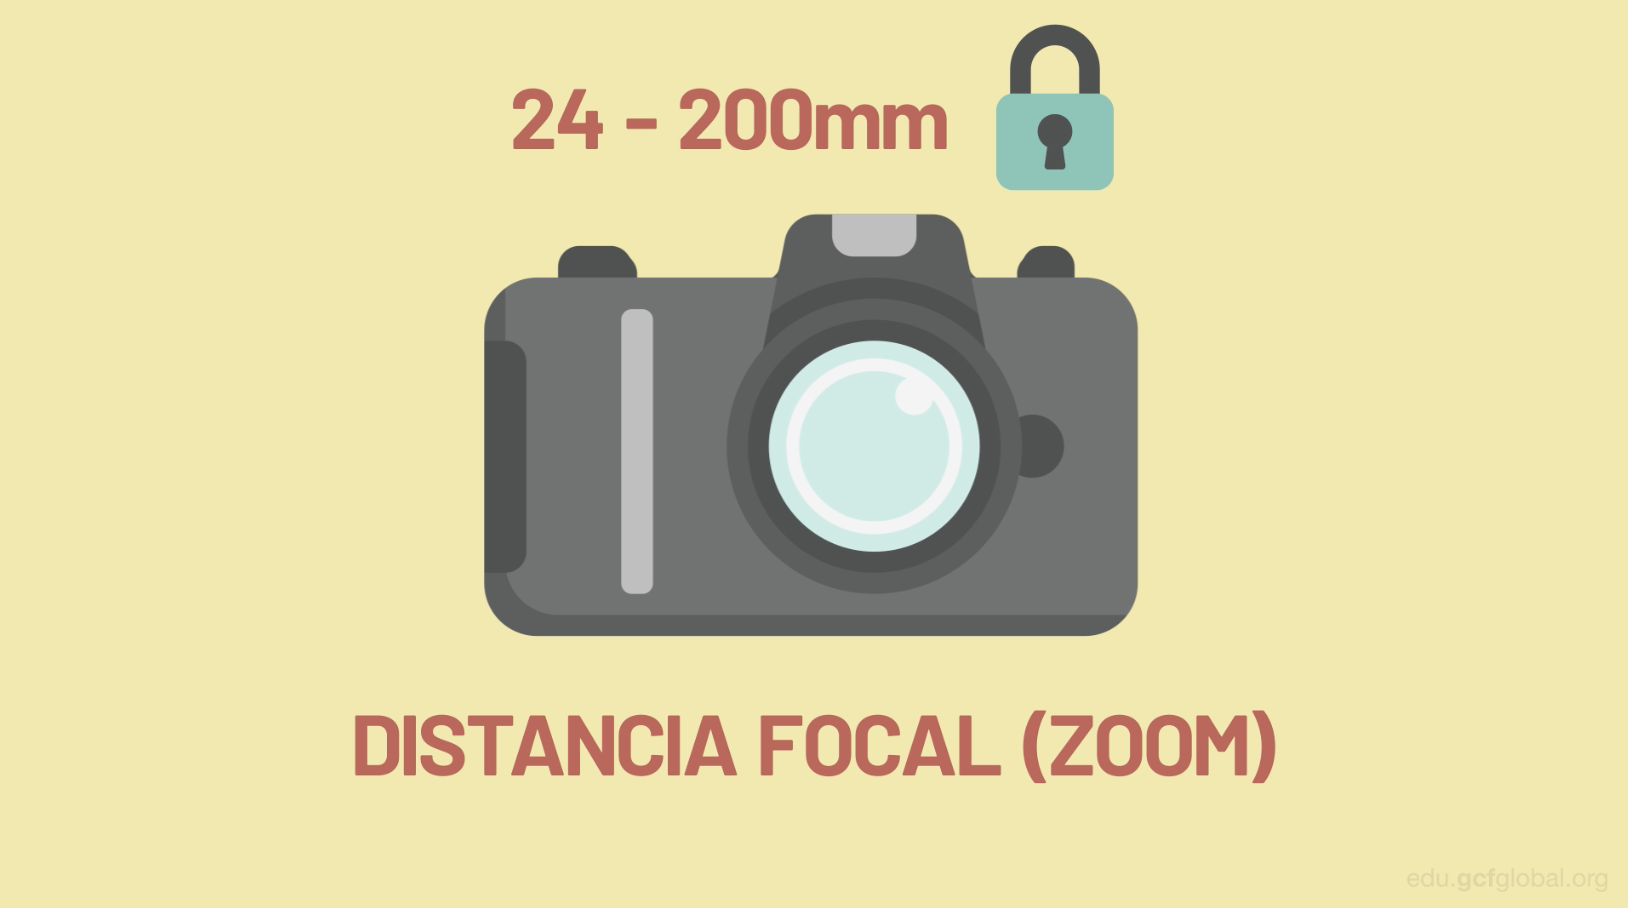 La distancia focal, es decir el zoom, tiene un valor definido máximo desde la fabricación.